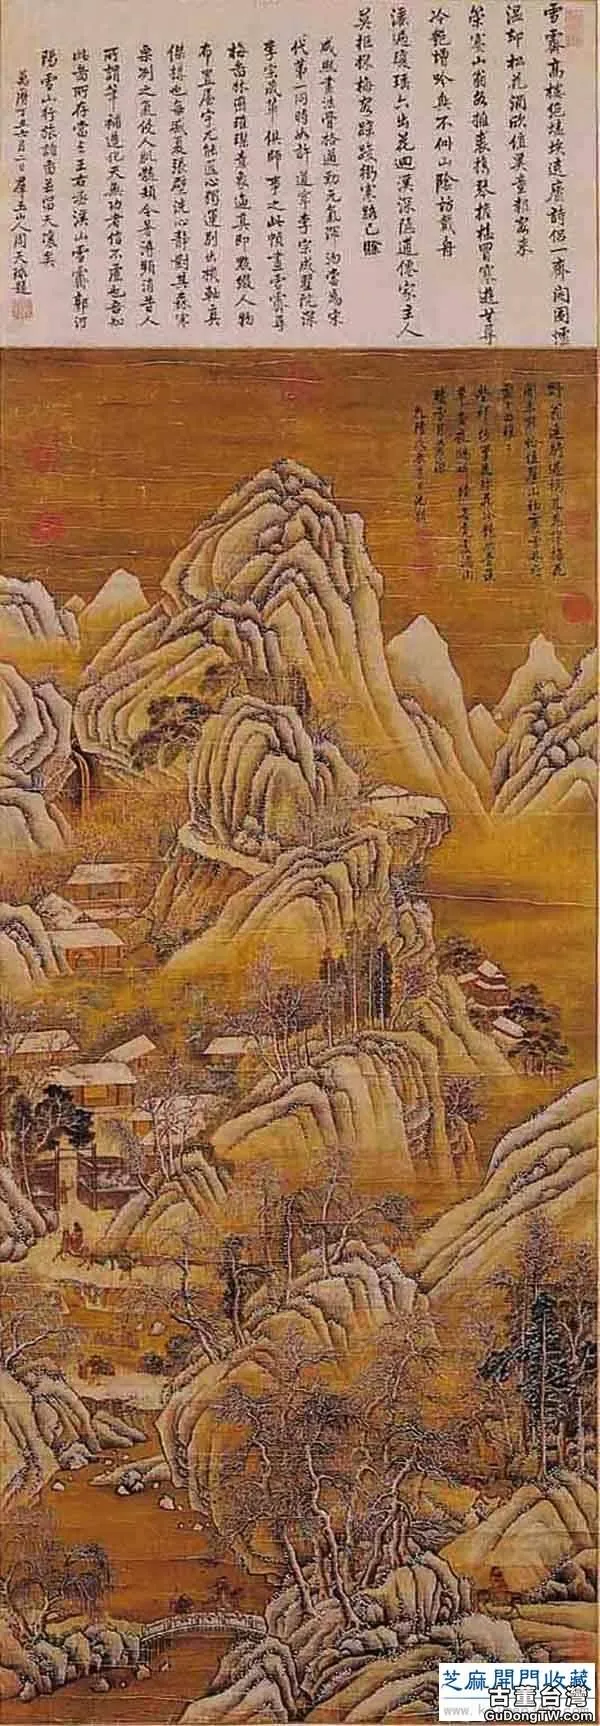 「經典欣賞」五代宋初大畫家李成的傳世山水畫